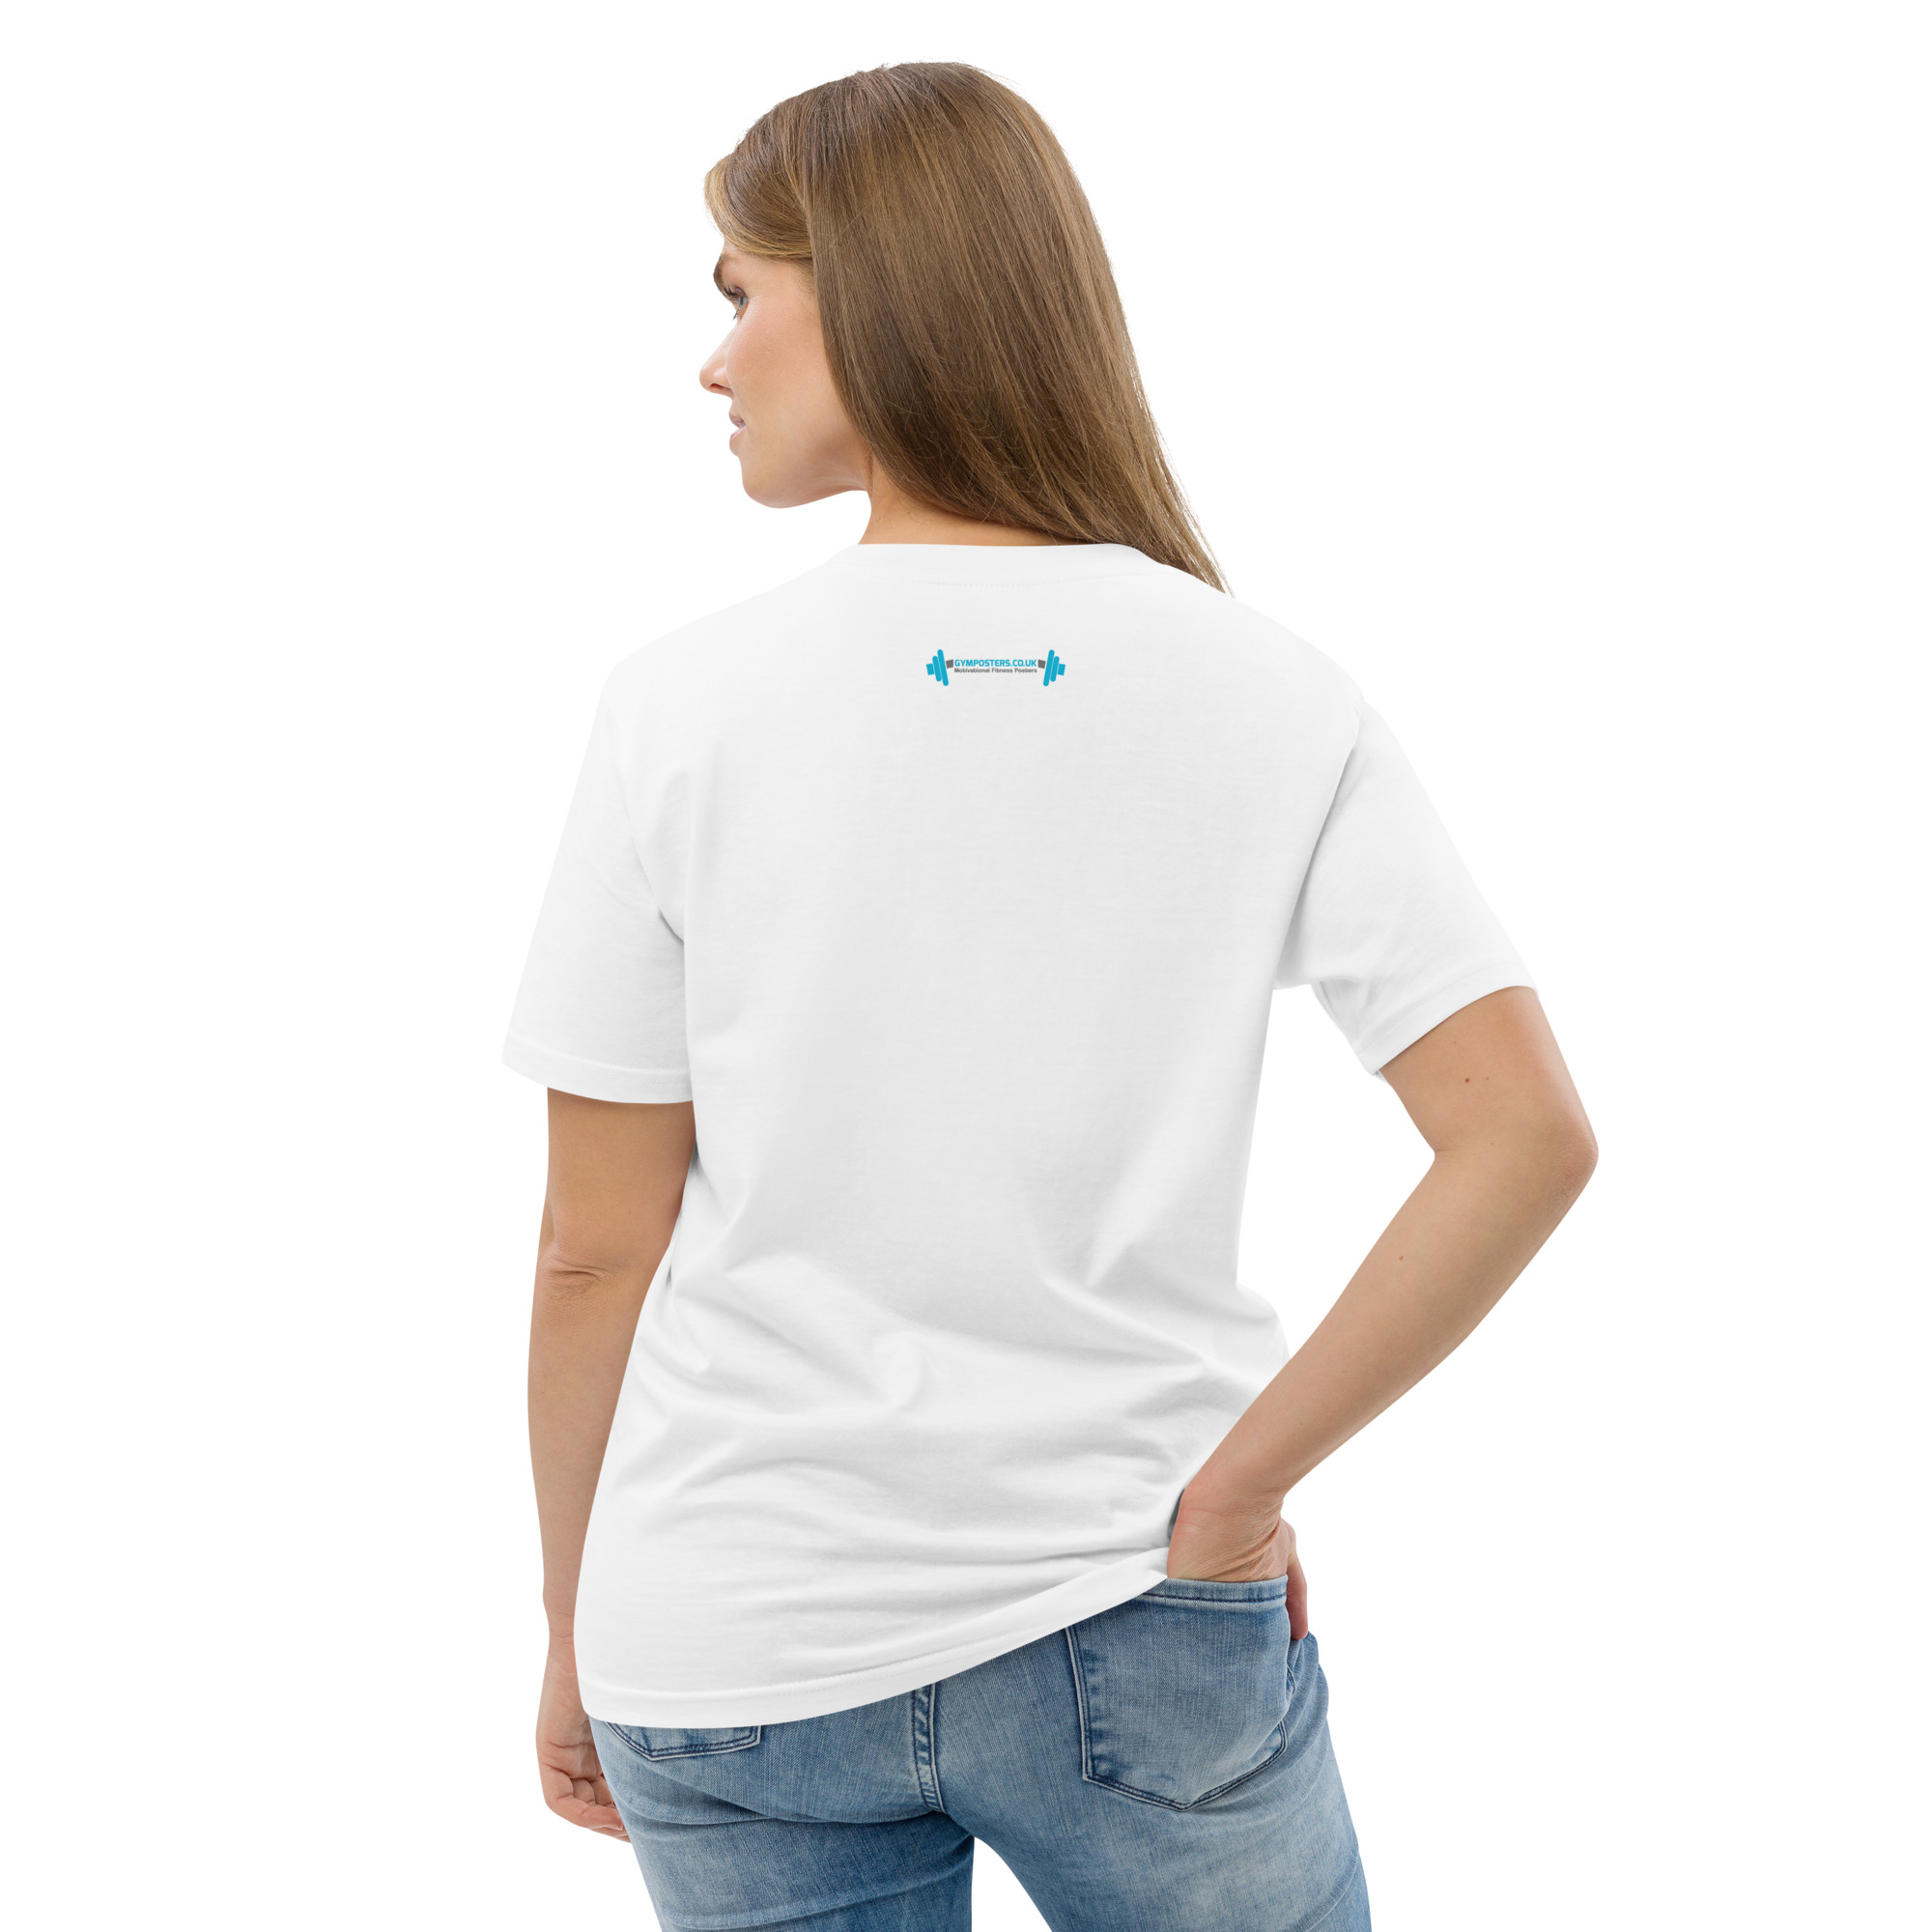 unisex-organic-cotton-t-shirt-white-back-2-657852a6bae9a.jpg